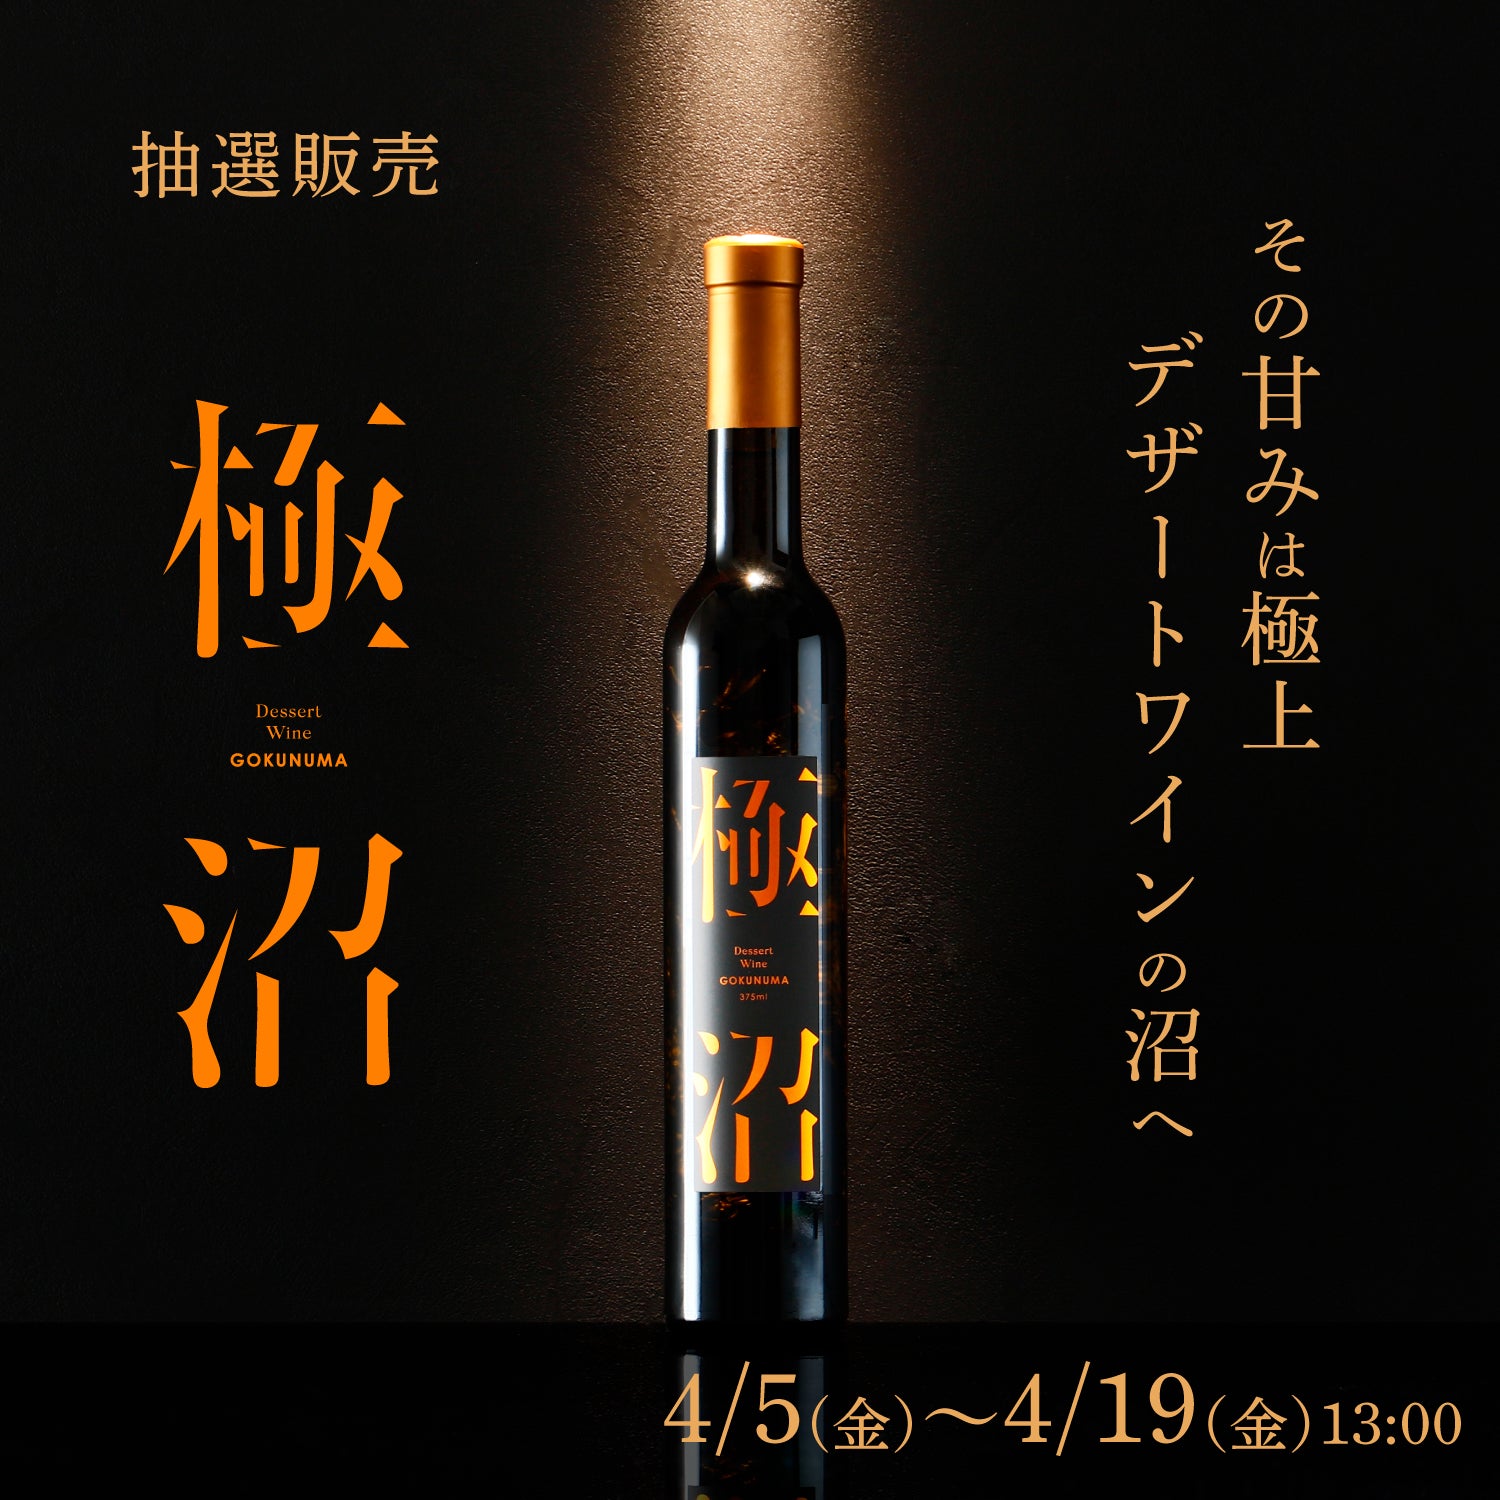 酒米の王様に恋をした僕の物語を知ったら、君は何を想うだろうか。日本酒720ml - 飲料/酒